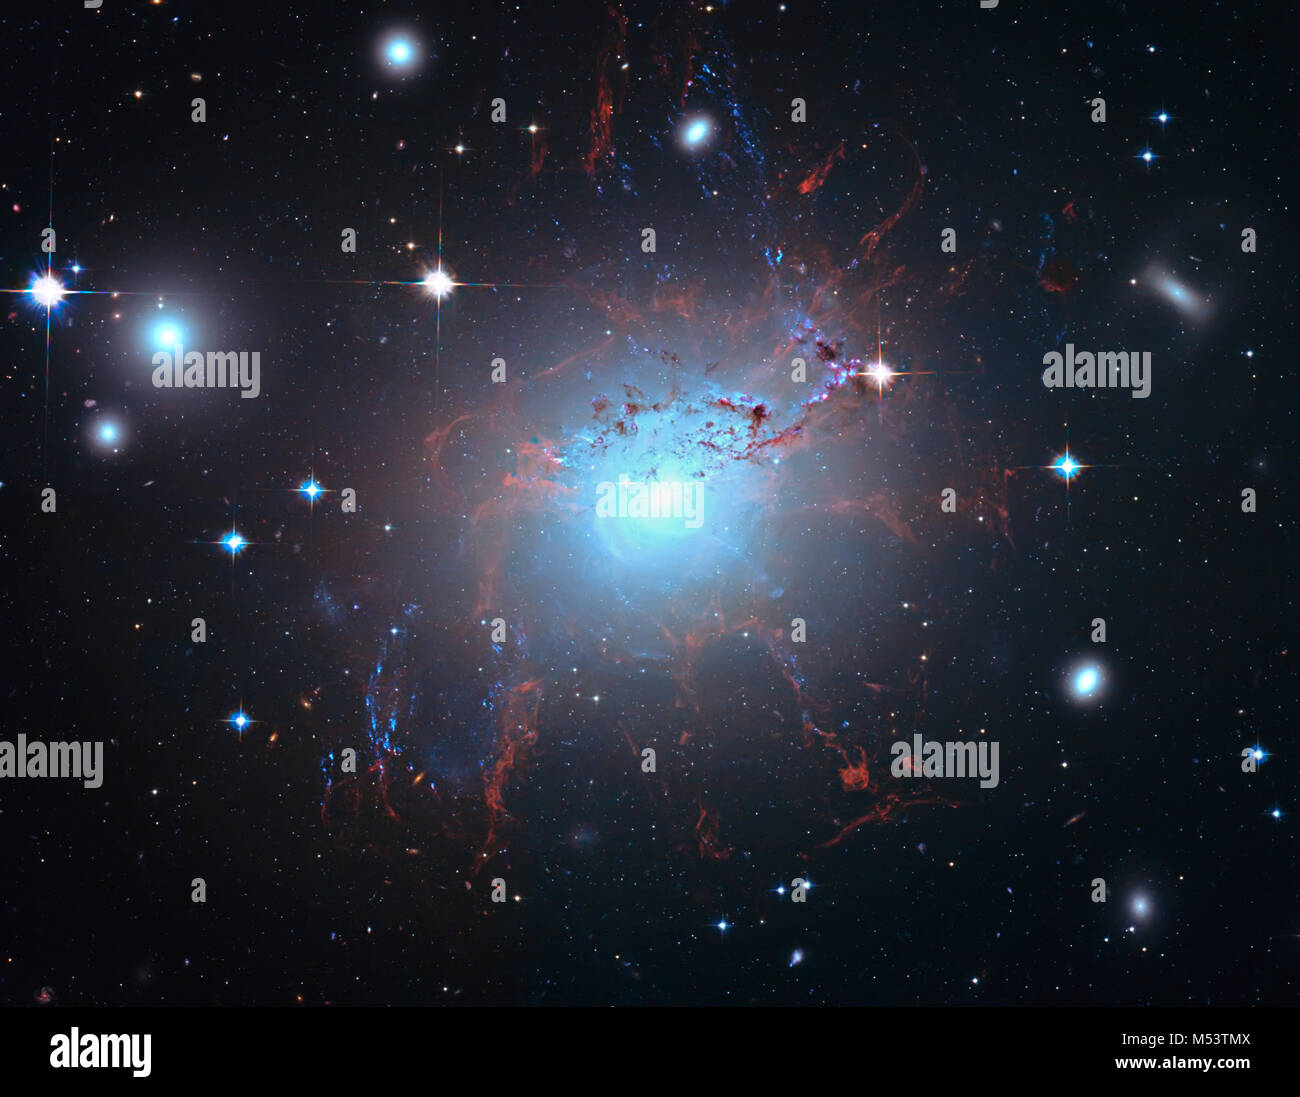 Helle Galaxie Deep Space NGC 1275. Elemente dieses Bild von der NASA eingerichtet. Retuschierte Bild. Stockfoto